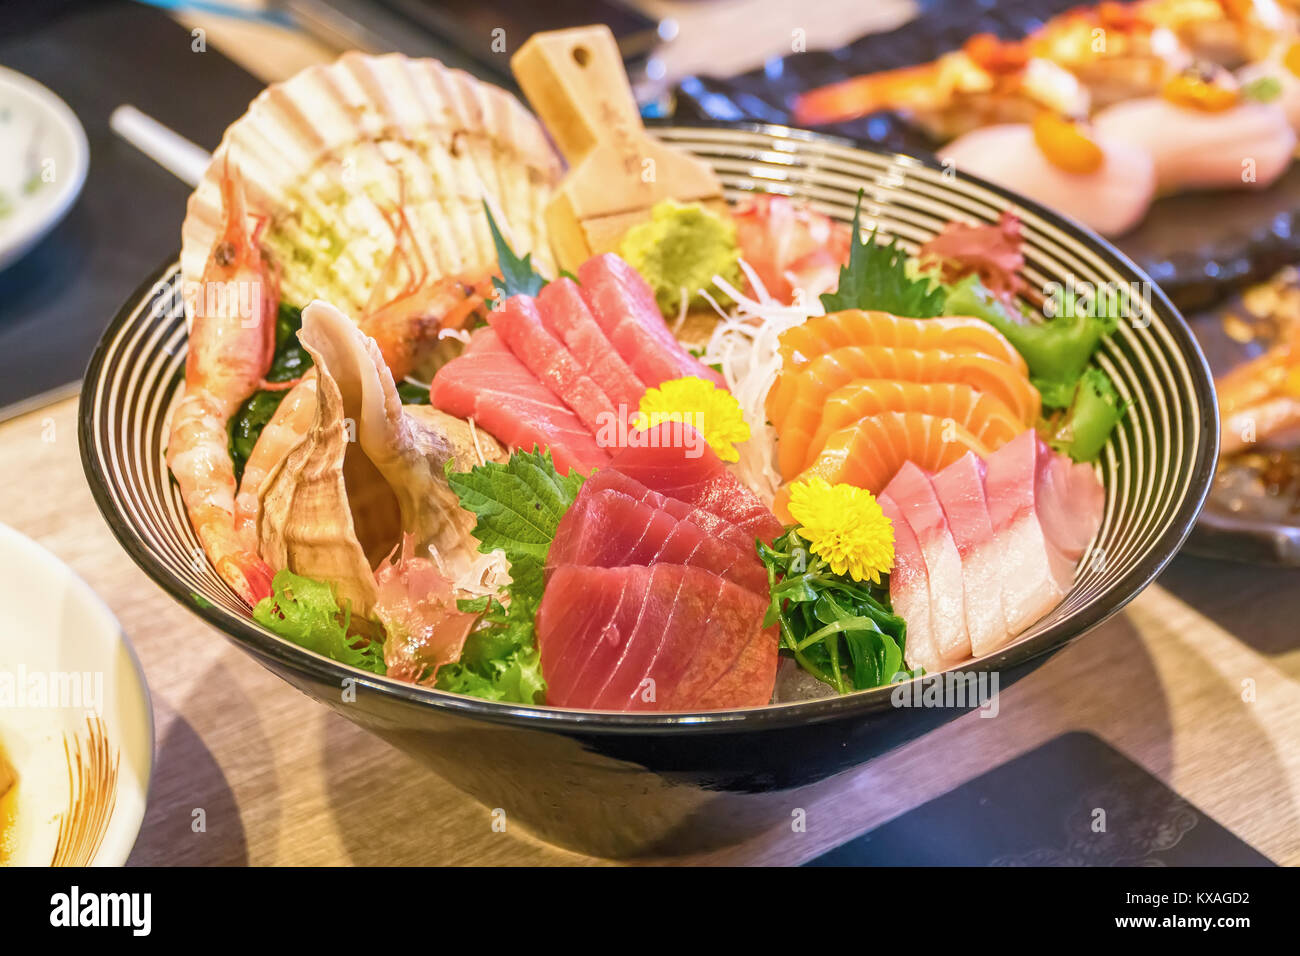 Le saumon frais et les fruits de mer don, Close up, jeu de bol de fruits de mer saumon frais avec du riz et de la sauce wahhabite, nourriture traditionnelle Japans Banque D'Images